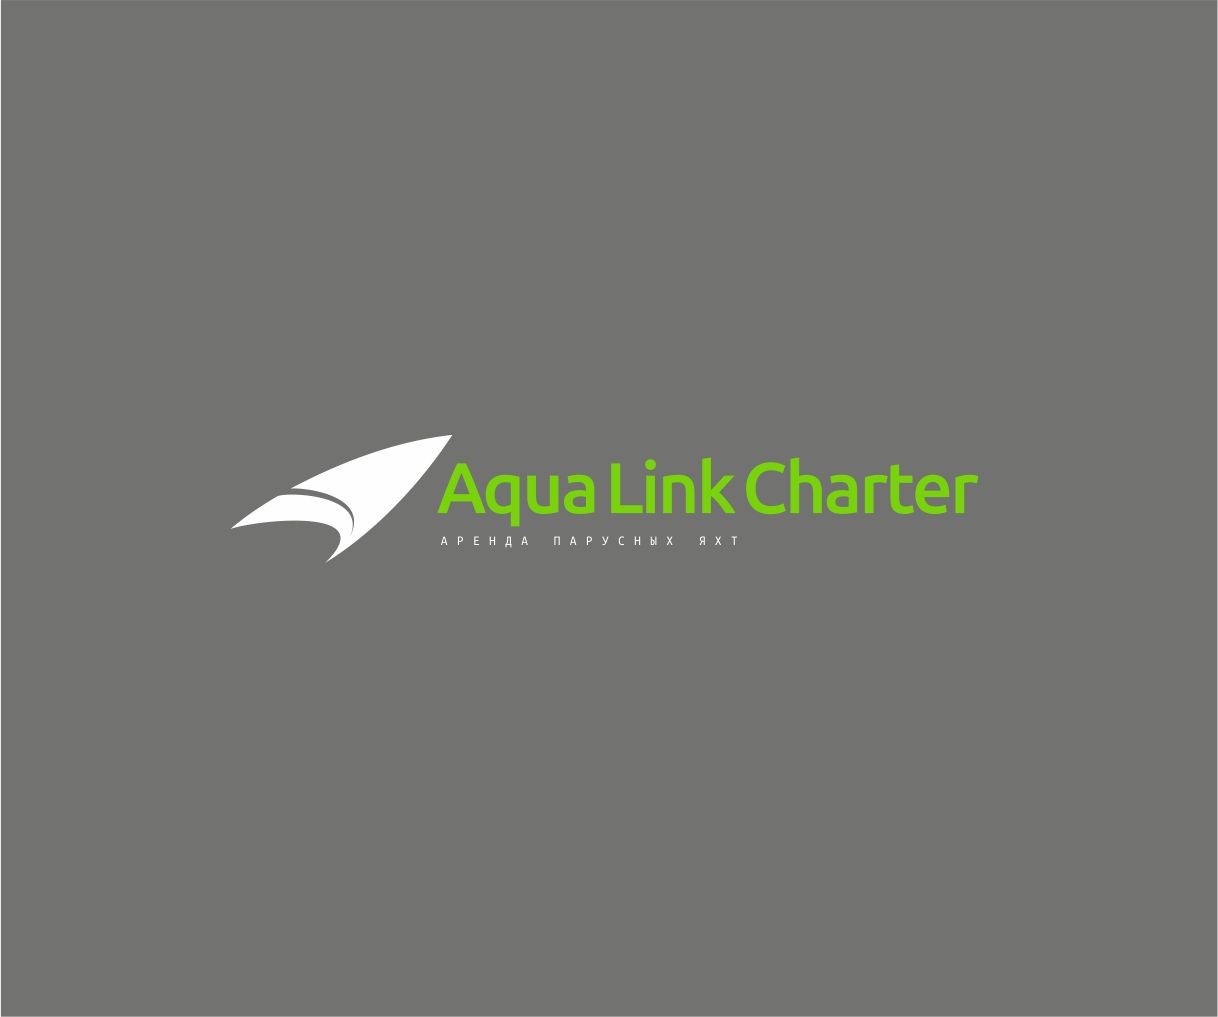 Аренда (чартер) парусных яхт - Aqua Link Charter - дизайнер GAMAIUN